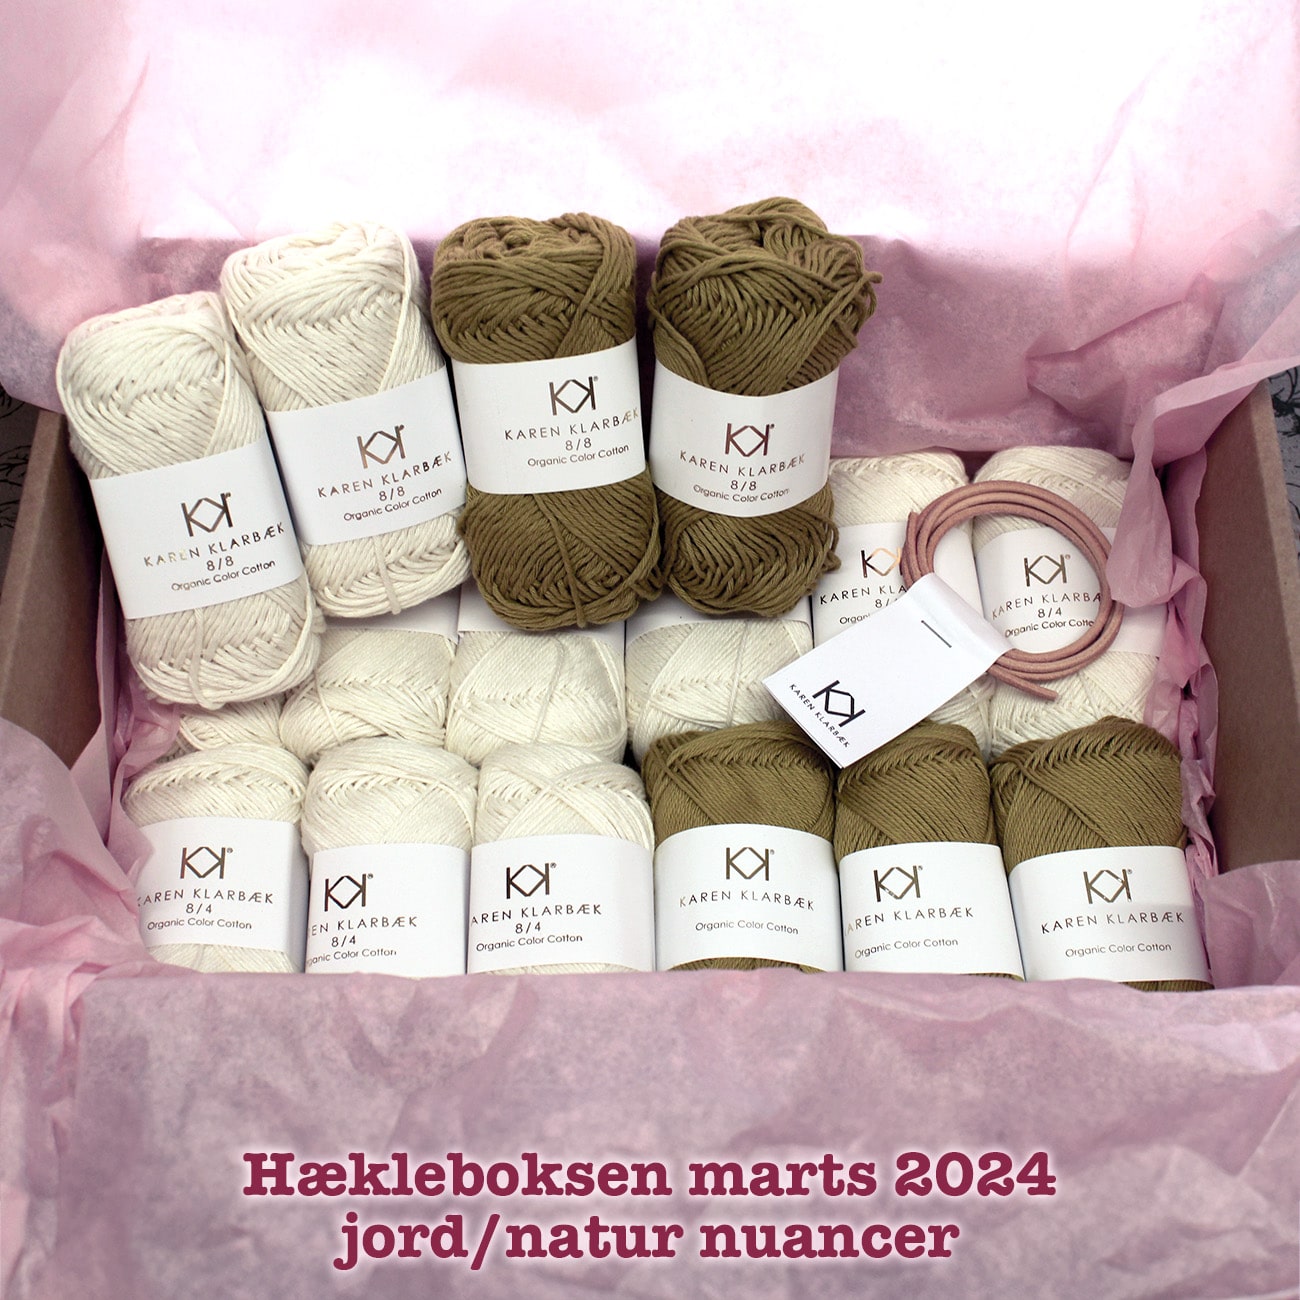 Hækleboksen standard marts 2024 jord/natur nuancer Karen Klarbæk organic cotton 8/8 og 8/4